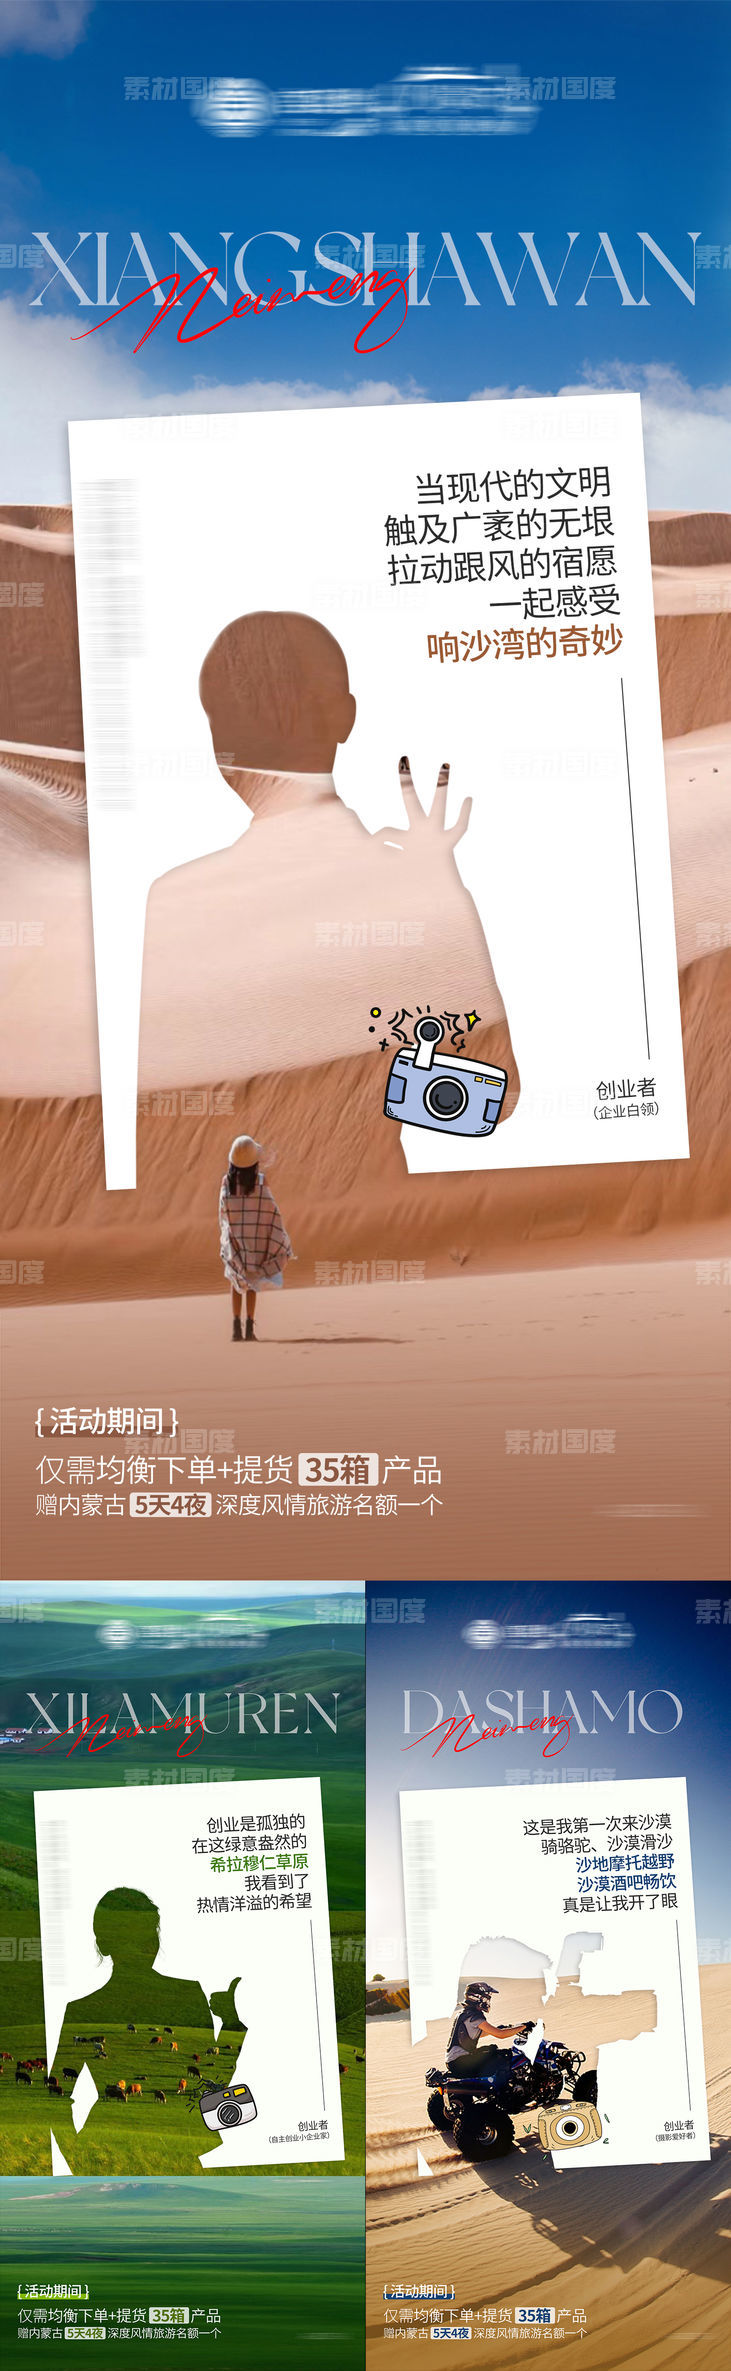 内蒙古呼和浩特旅游政策海报